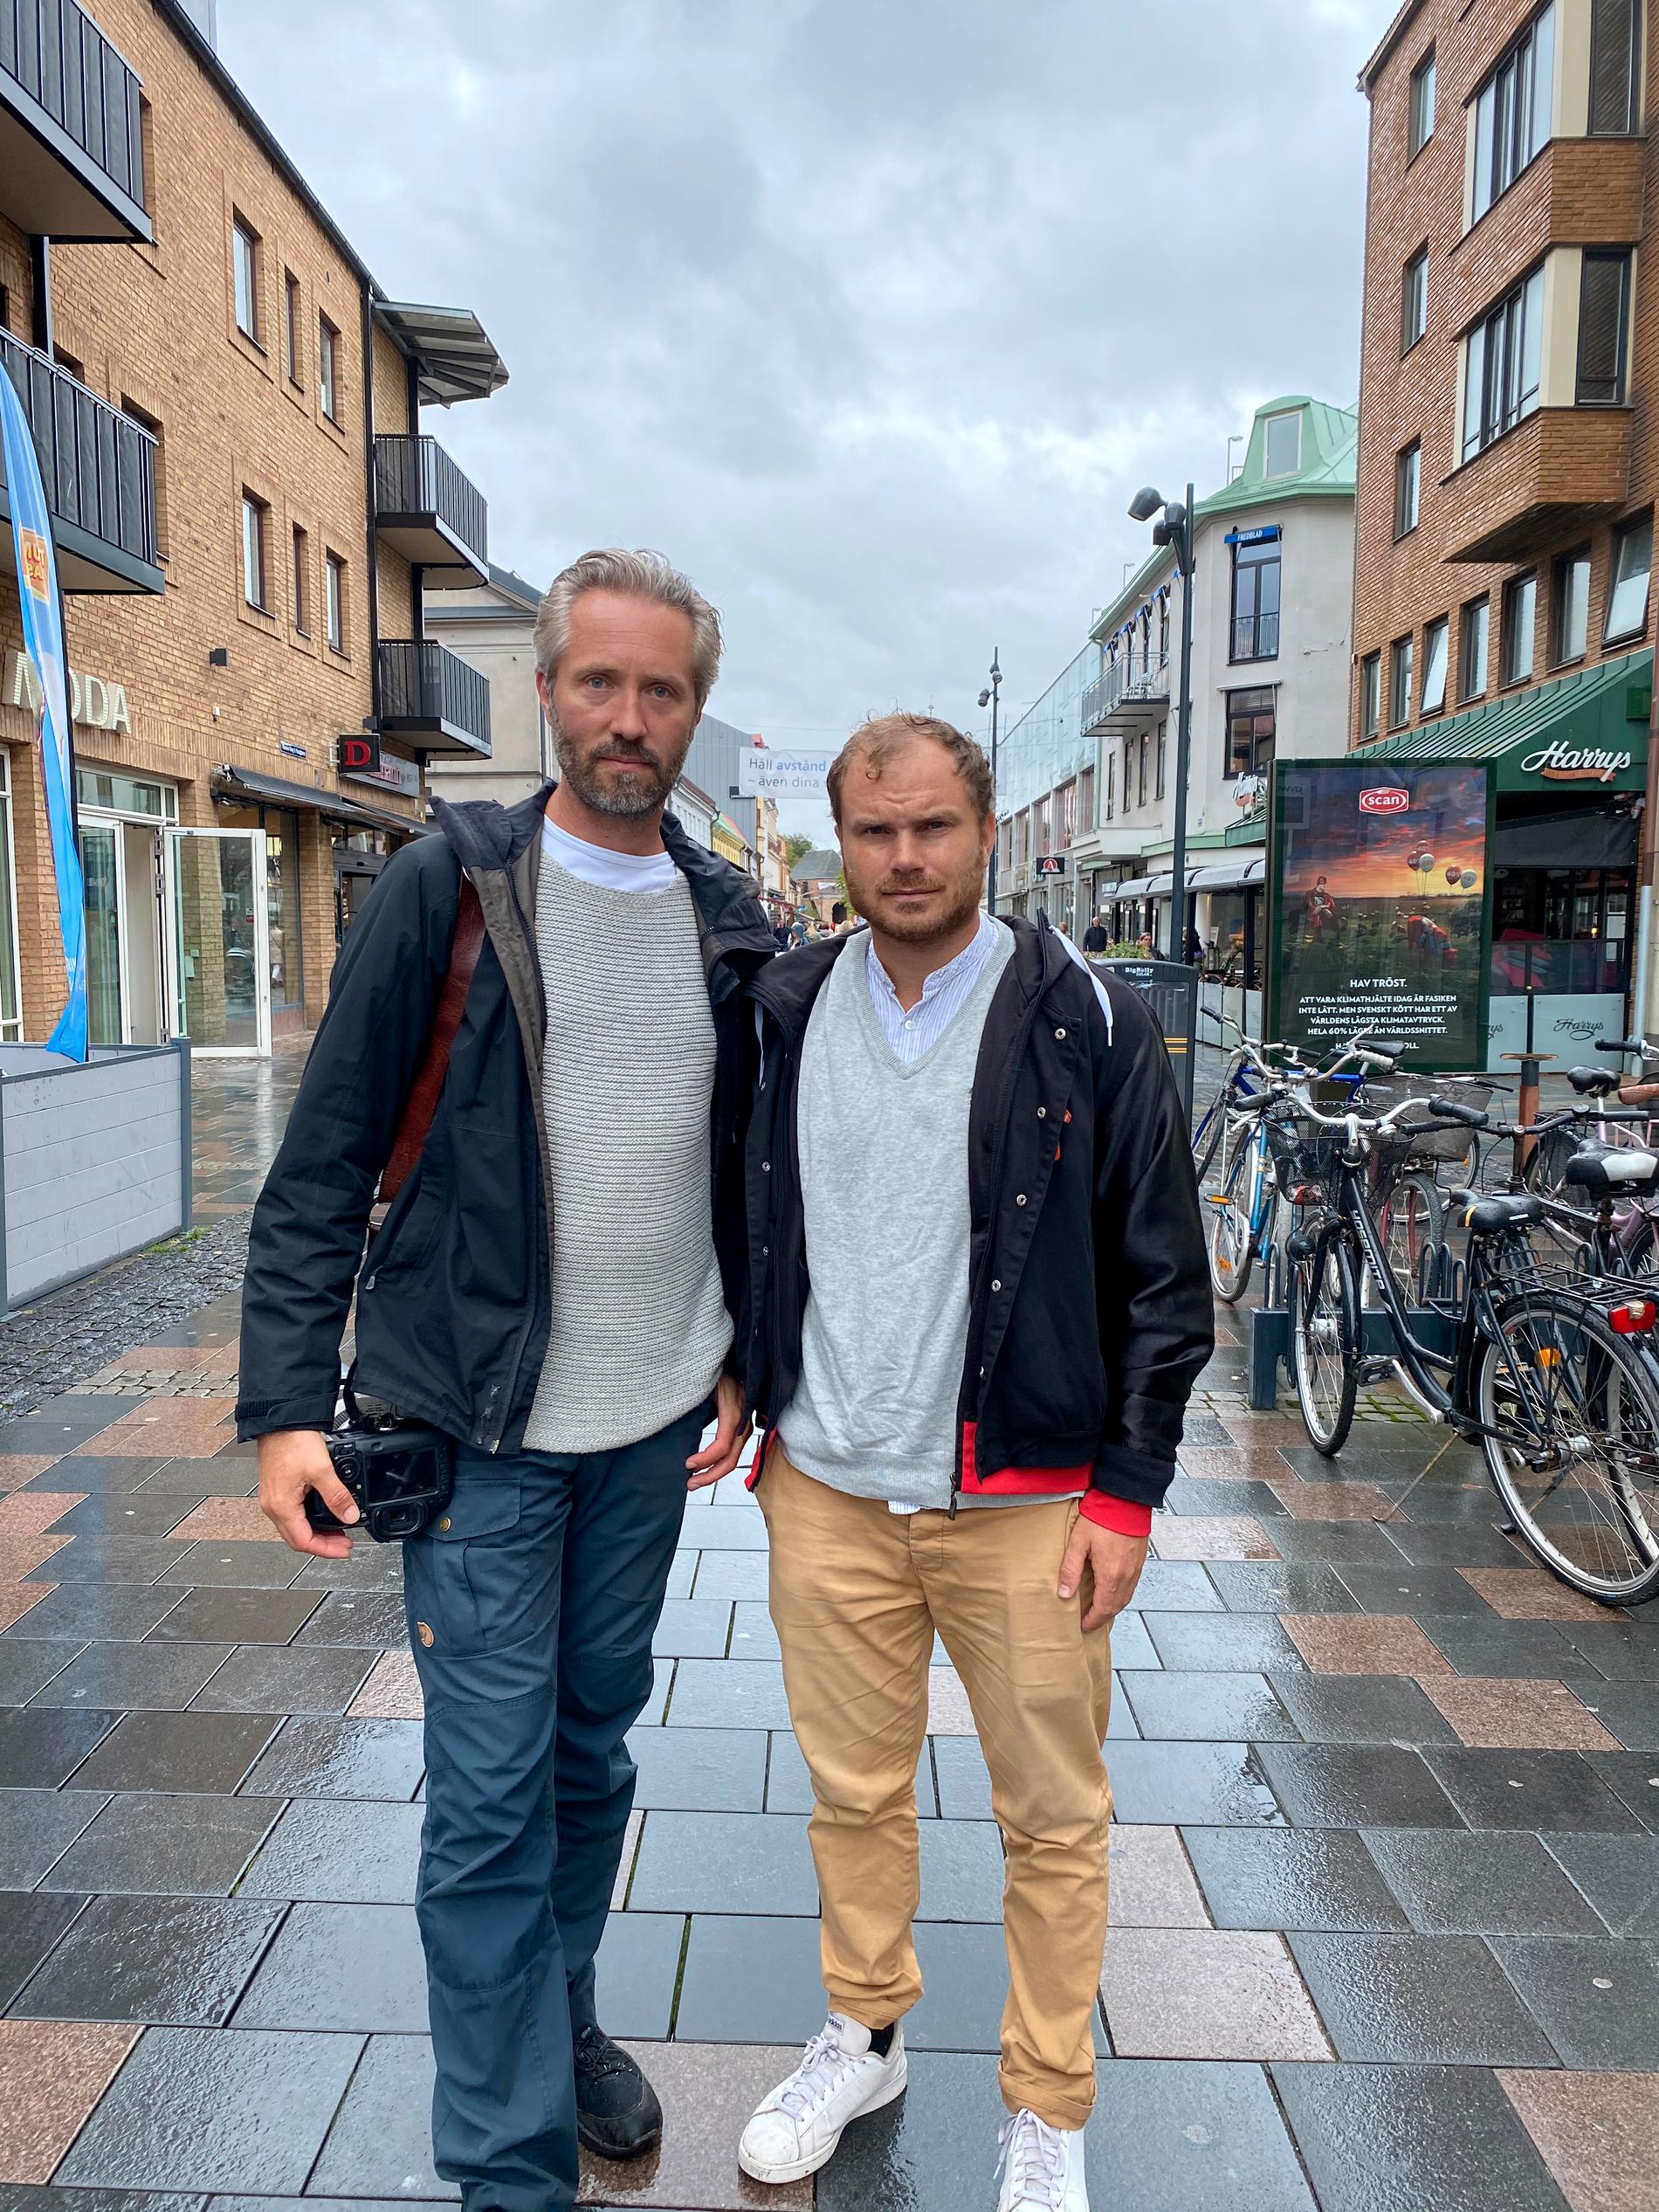 Aftobladets team på plats i Halmstad, fotograf Anders Andersson och reporter Petter Larsson